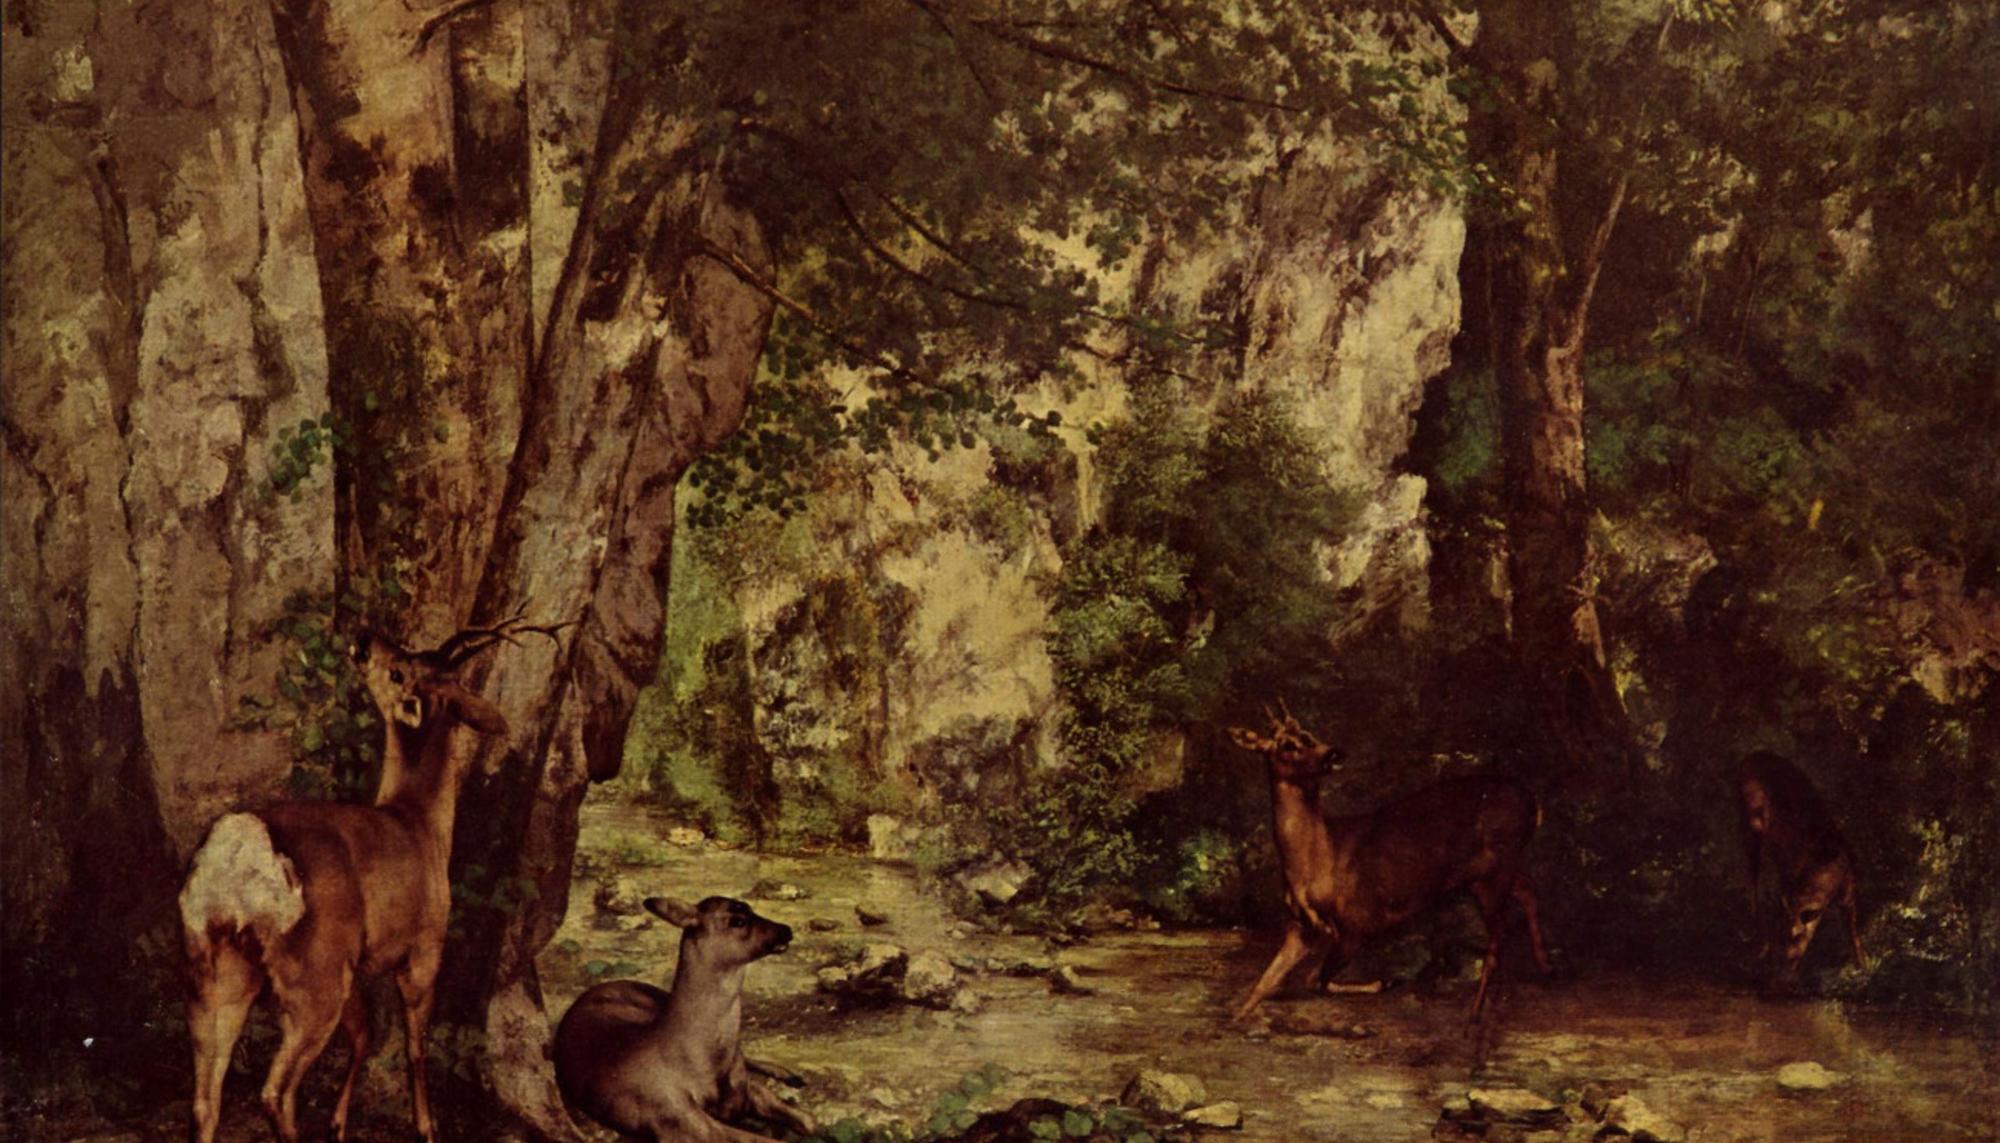 Remise de chevreuils au ruisseau du Plaisir-Fontaine (Gustave Courbet, 1866)